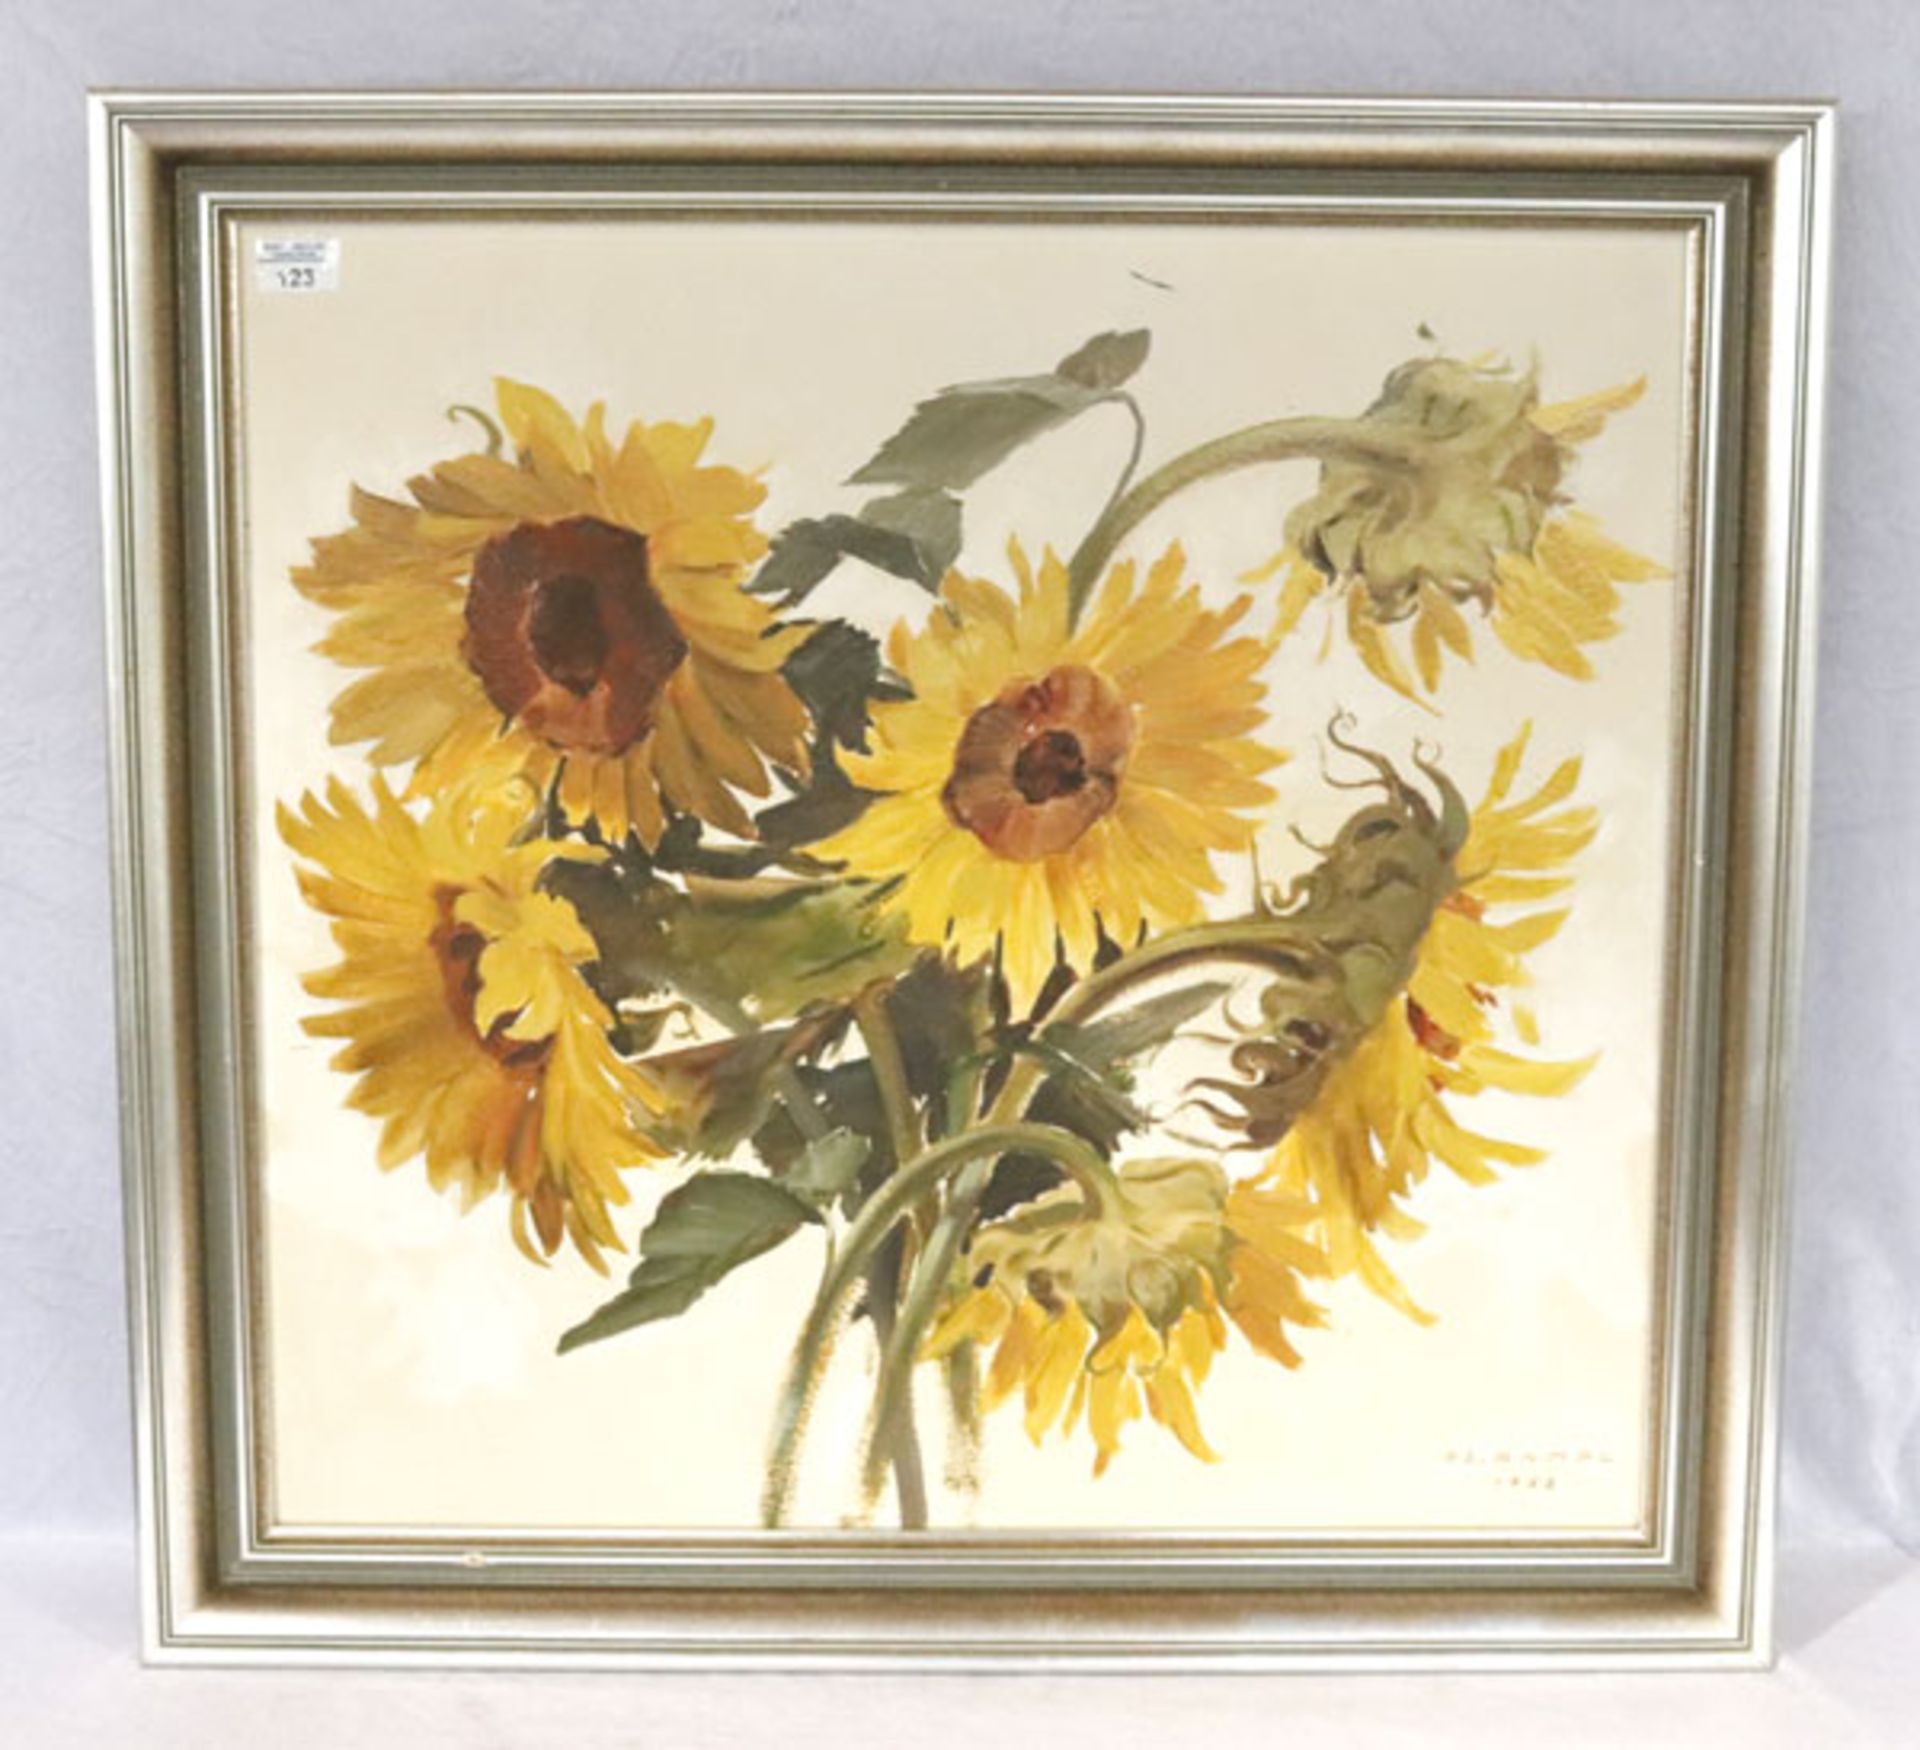 Gemälde ÖL/Hartfaser 'Sonnenblumen', signiert OS (Oswald) Rampl, datiert 1958, * 1911 Innsbruck +